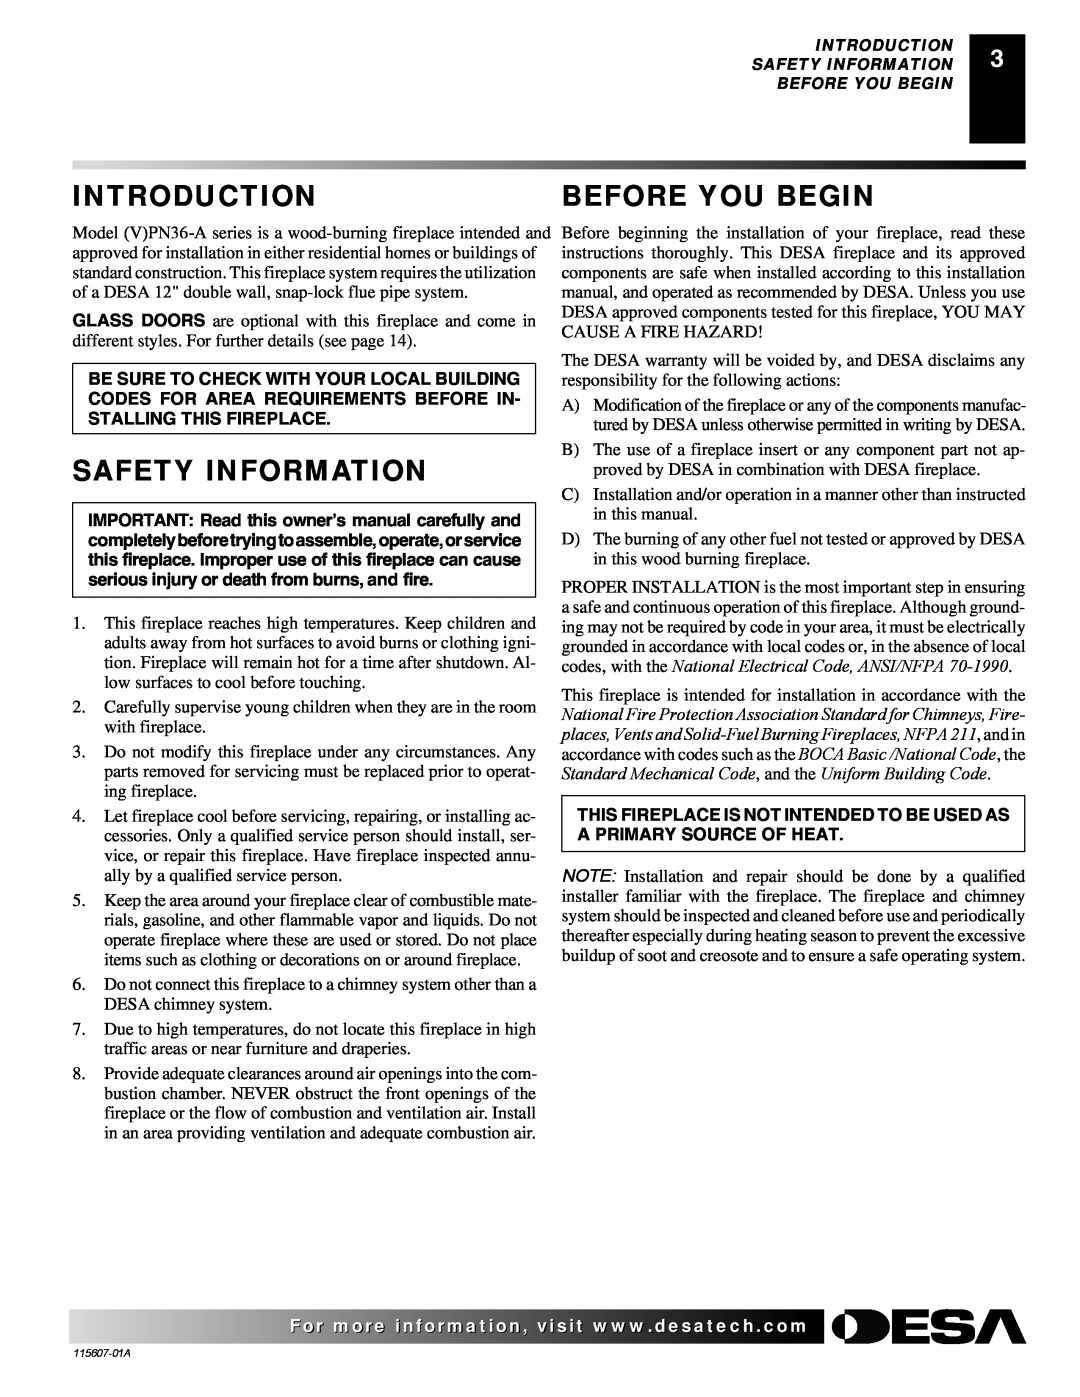 Desa (V)PN36-A manual Introduction, Before You Begin, Safety Information, Uniform Building Code, BOCA Basic /National Code 